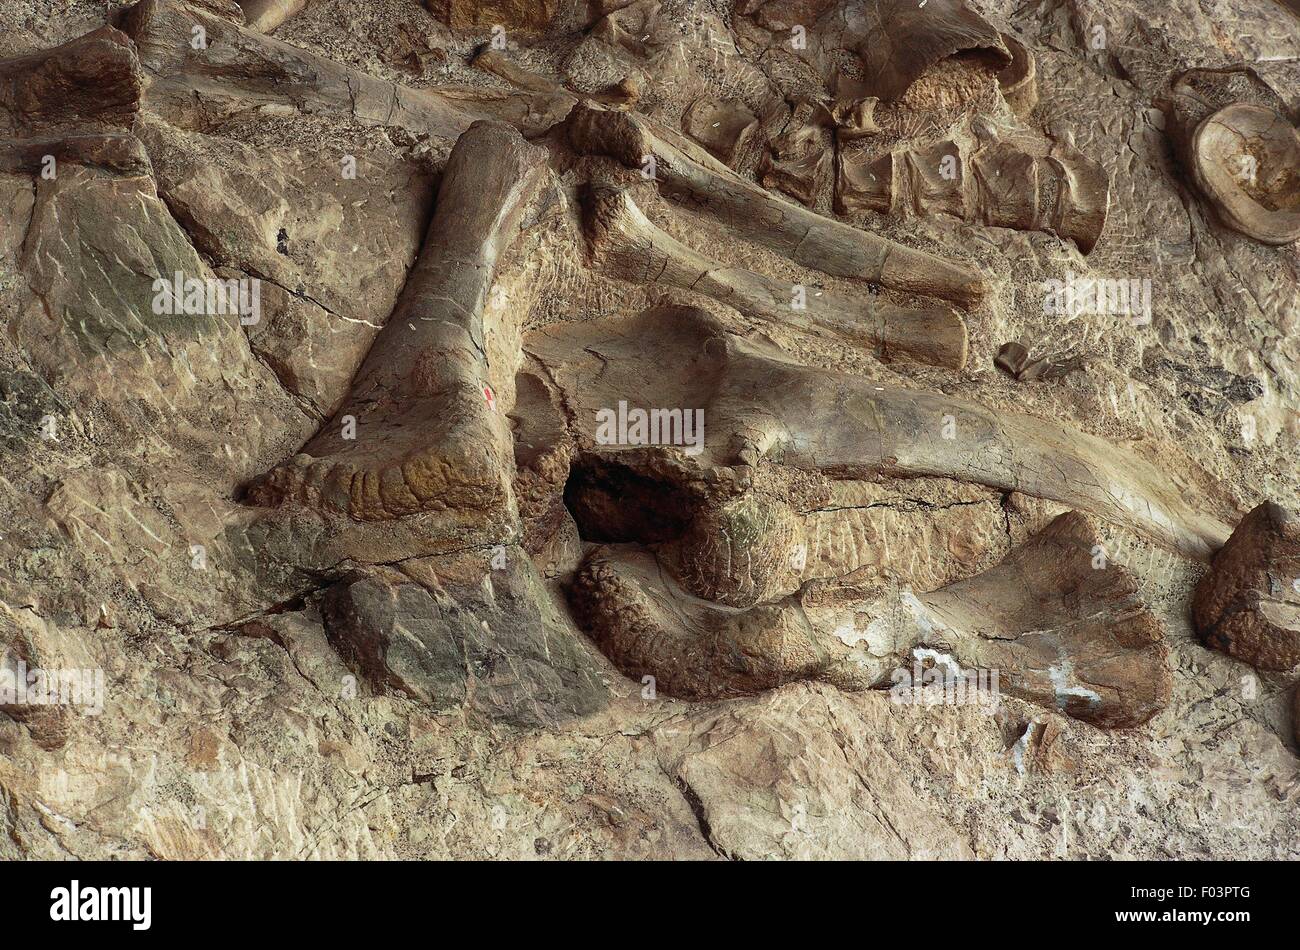 Fossili di dinosauro conservato nella roccia, Dinosaur Quarry, Dinosaur National Monument, Utah-Colorado, Stati Uniti d'America. Dettaglio. Foto Stock